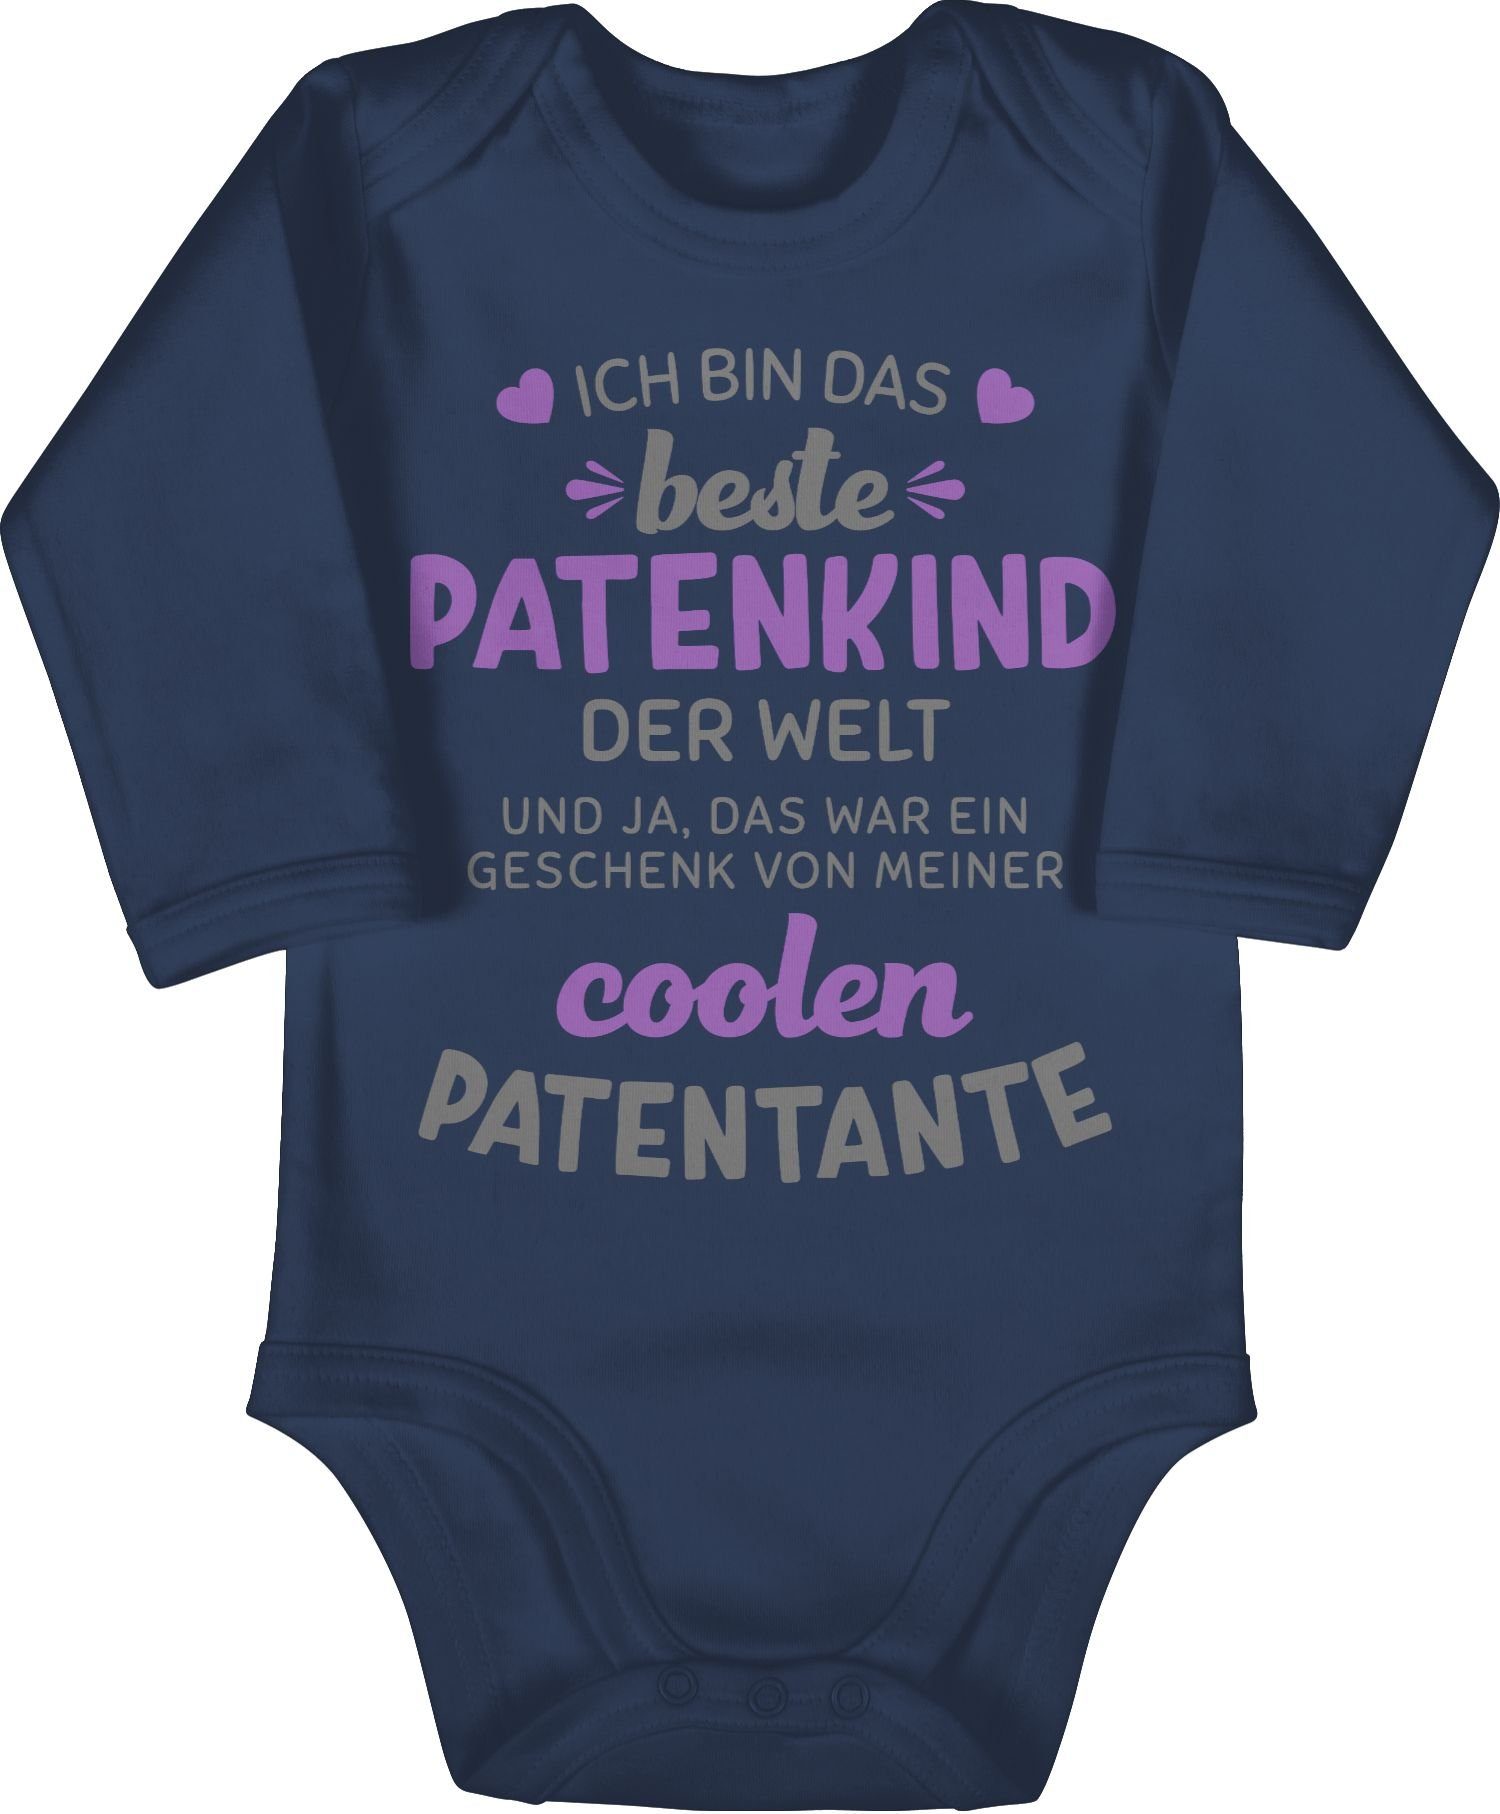 1 Navy Shirtbody Patentante Welt Patenkind grau/lila Blau Shirtracer das Ich bin der Baby beste